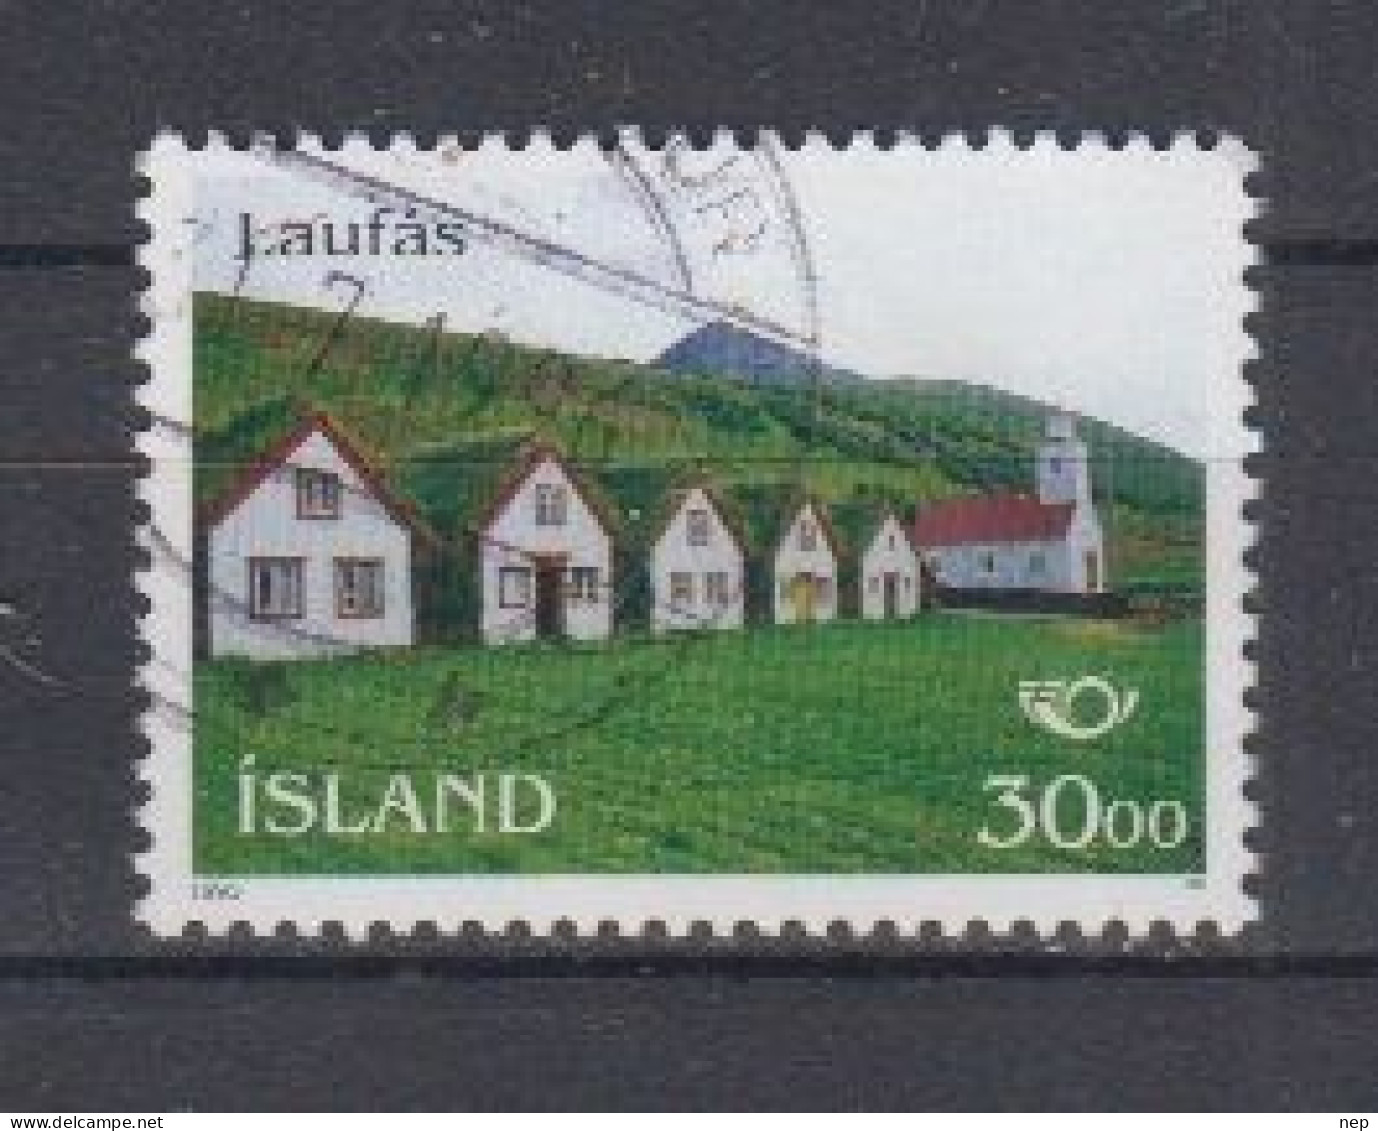 IJSLAND - Michel - 1995 - Nr 824 - Gest/Obl/Us - Used Stamps